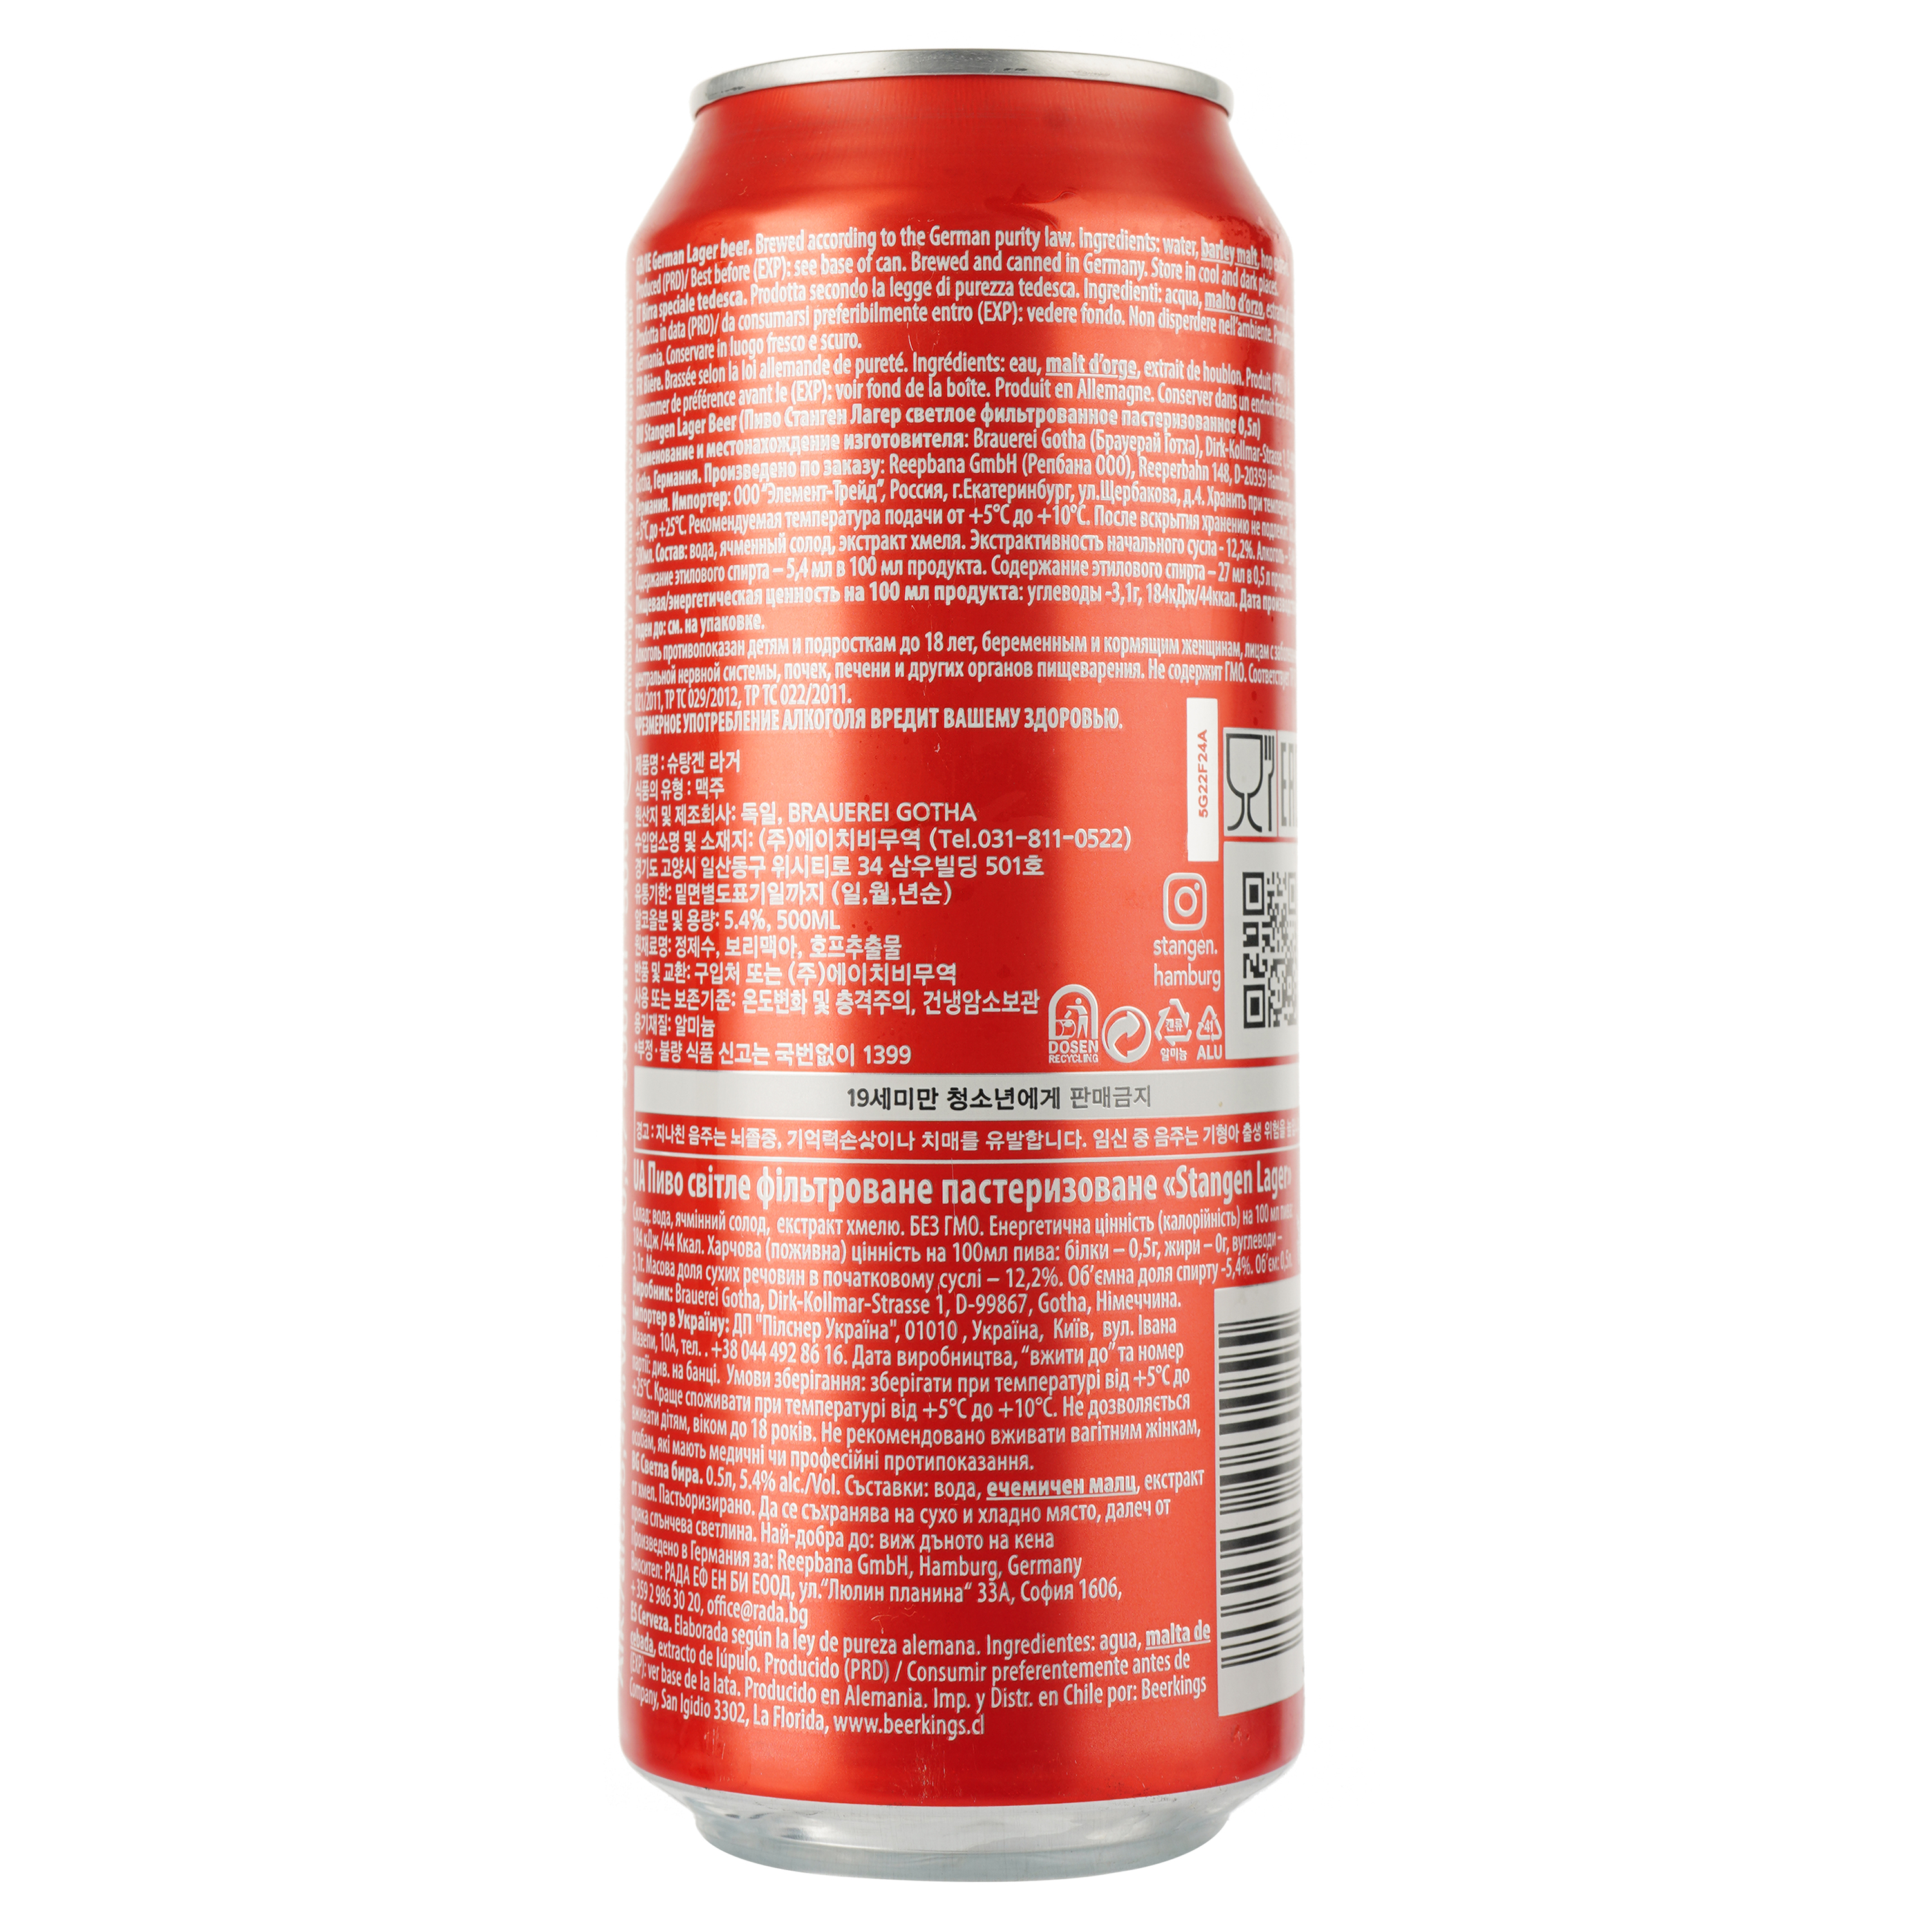 Пиво Stangen Lager bier, світле, фільтроване, 5,4%, з/б, 0,5 л - фото 2